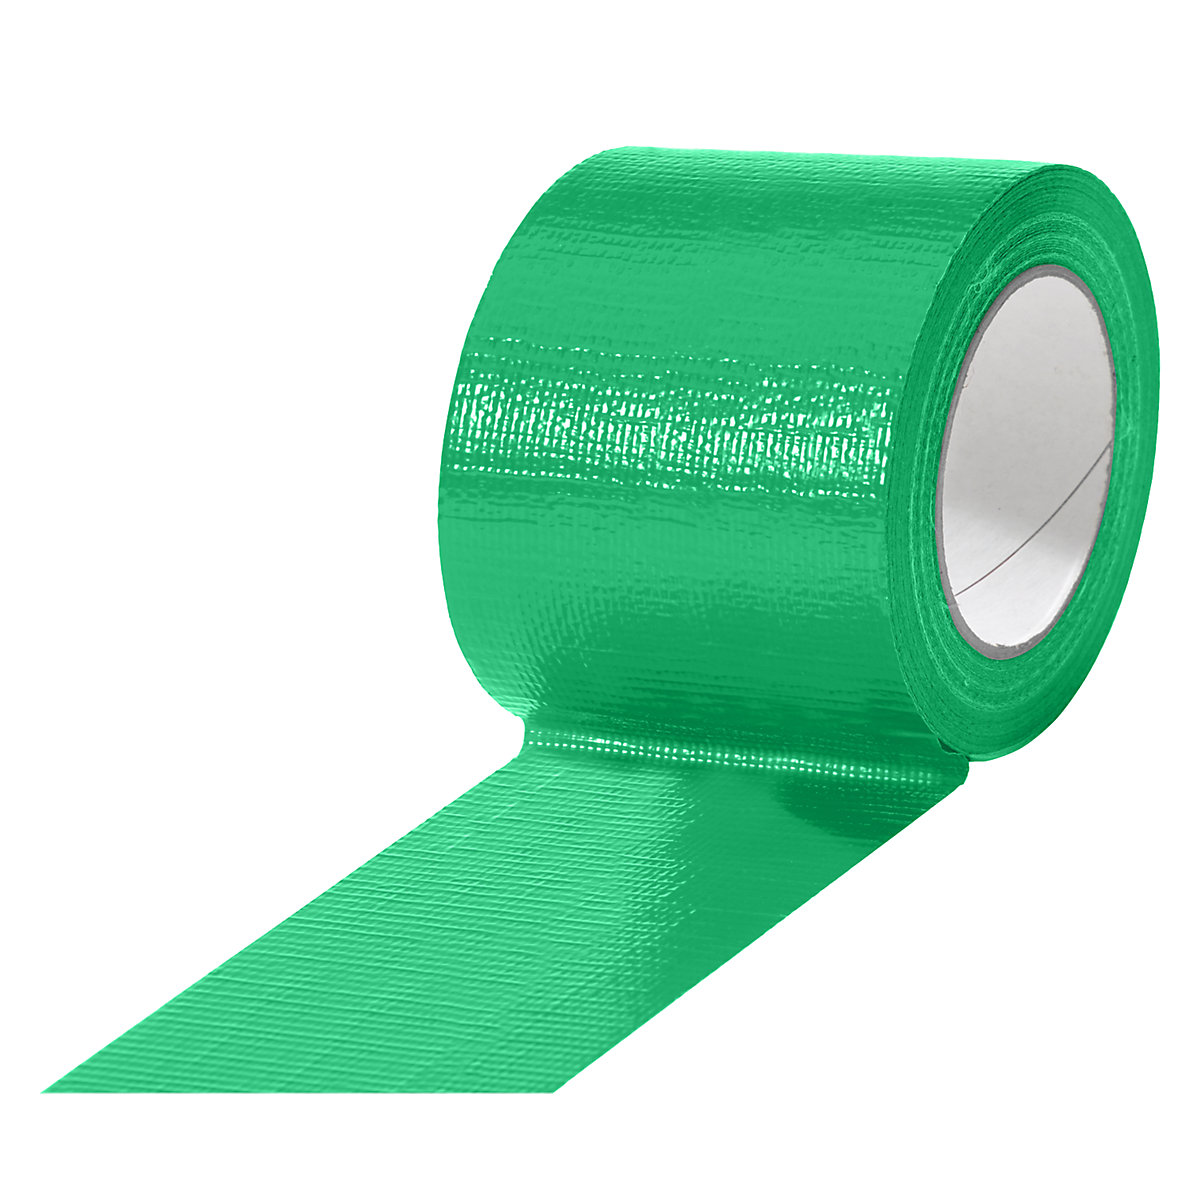 Tkaninová páska, v různých barvách, bal.j. 12 rolí, zelená, šířka pásky 75 mm-1